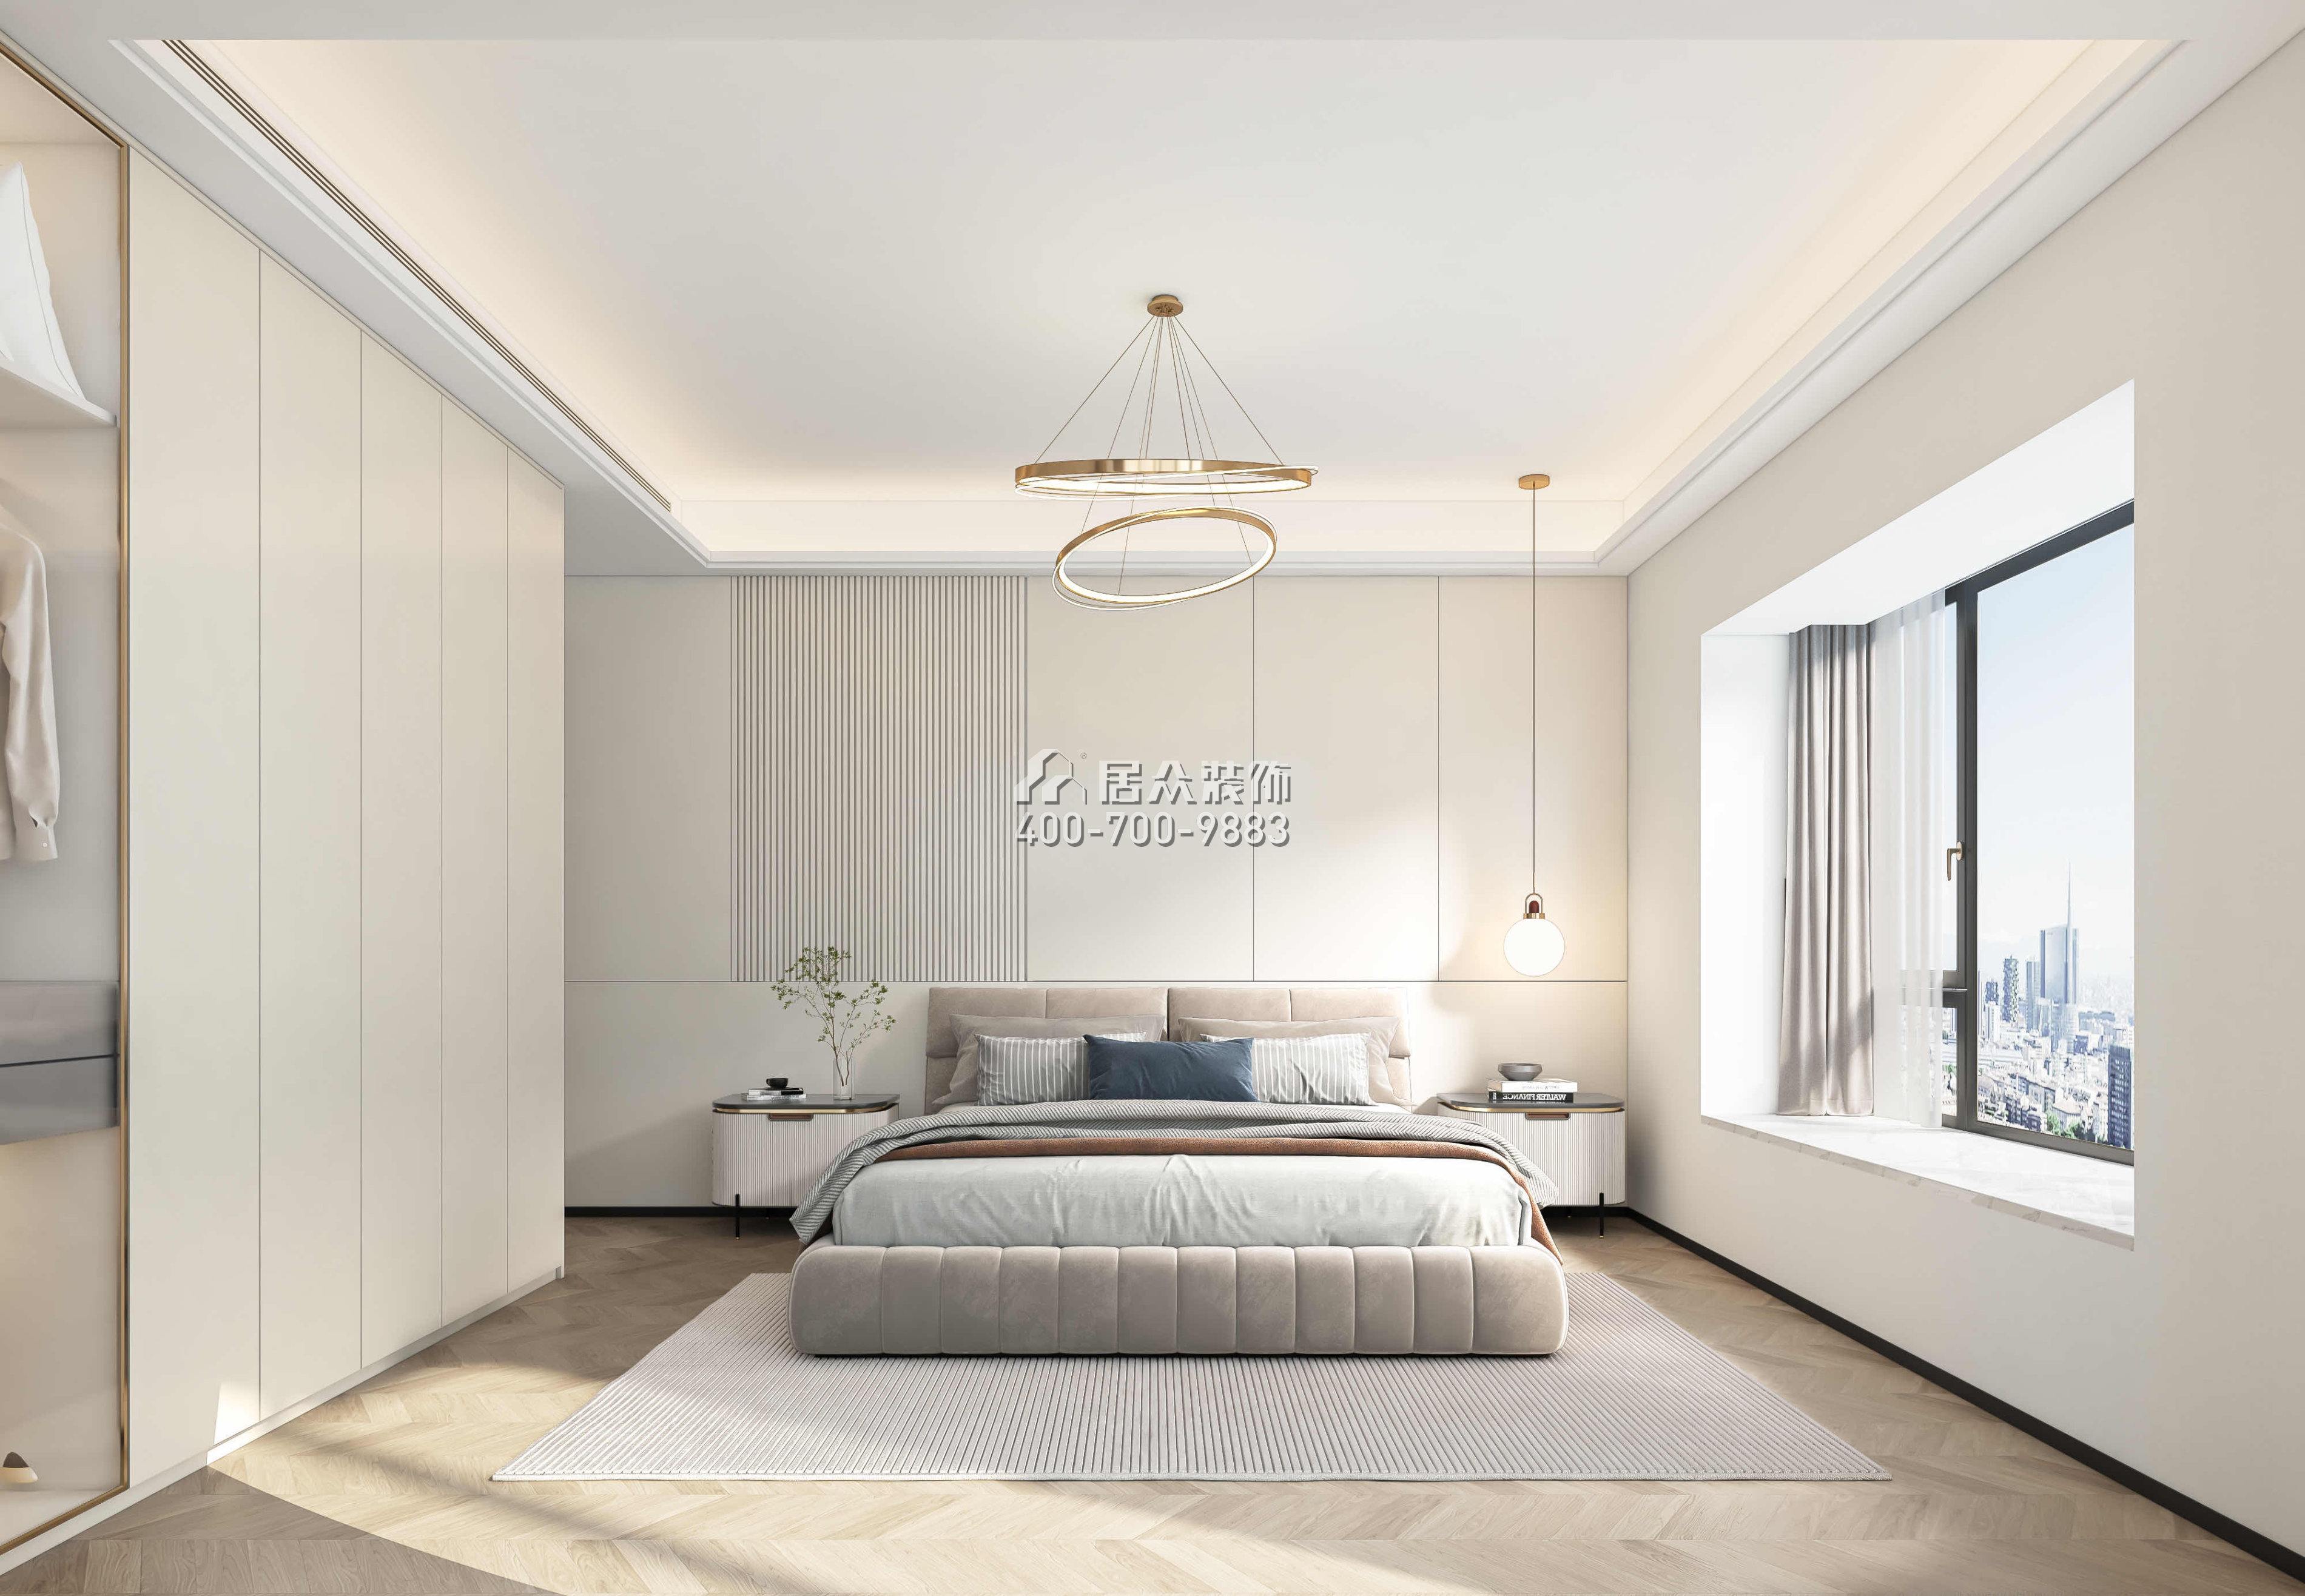 蔚藍海岸一期130平方米現代簡約風格平層戶型臥室裝修效果圖